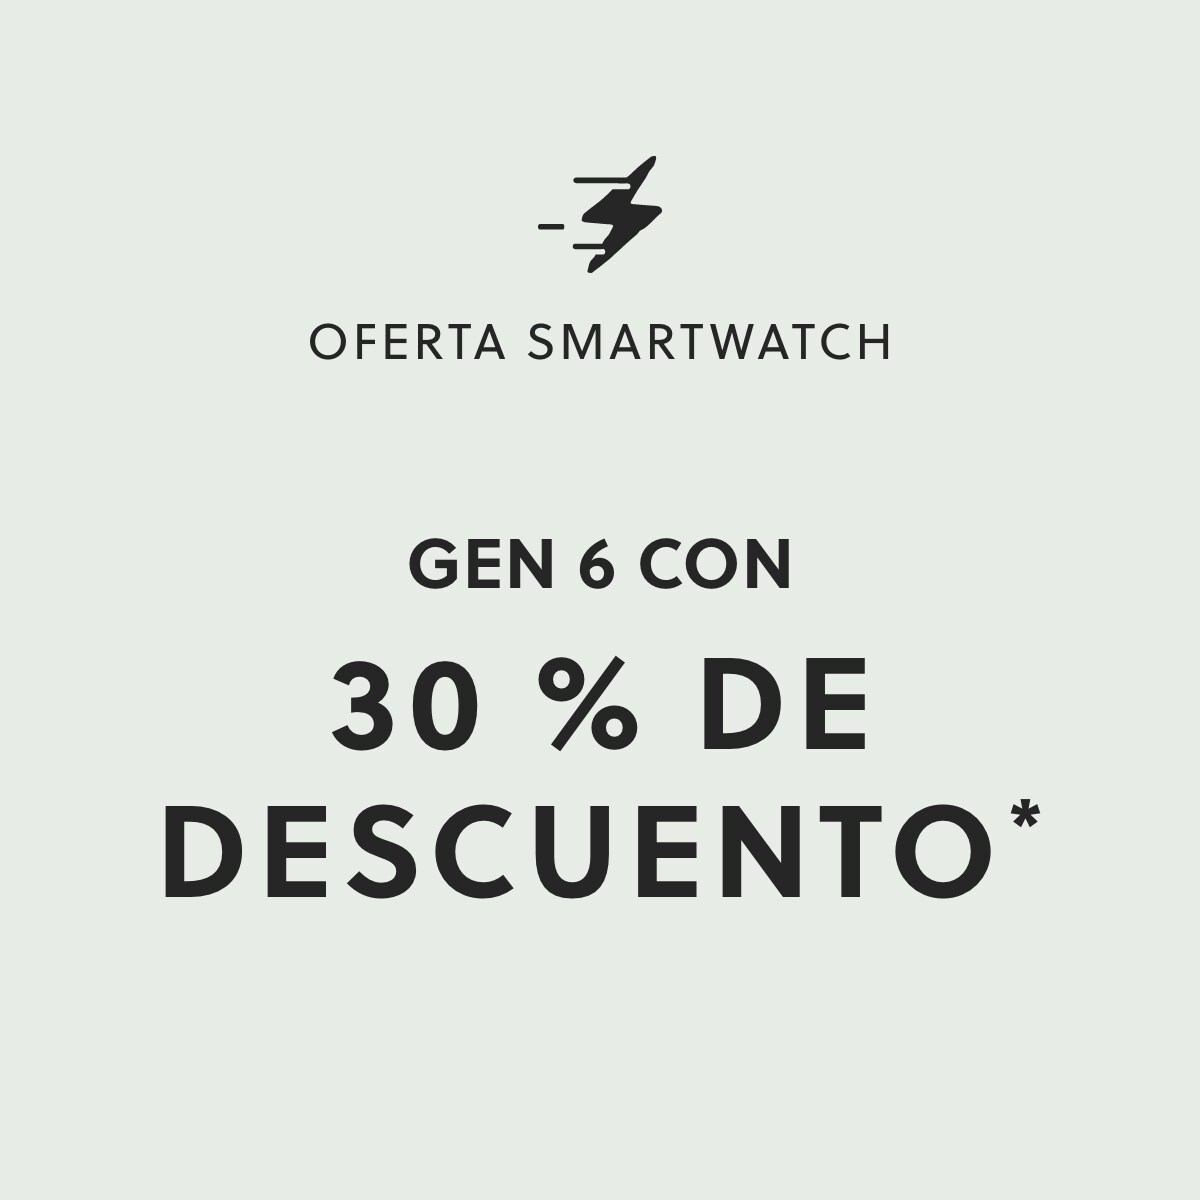 OFERTA SMARTWATCH GEN 6 CON 30 % DE DESCUENTO*